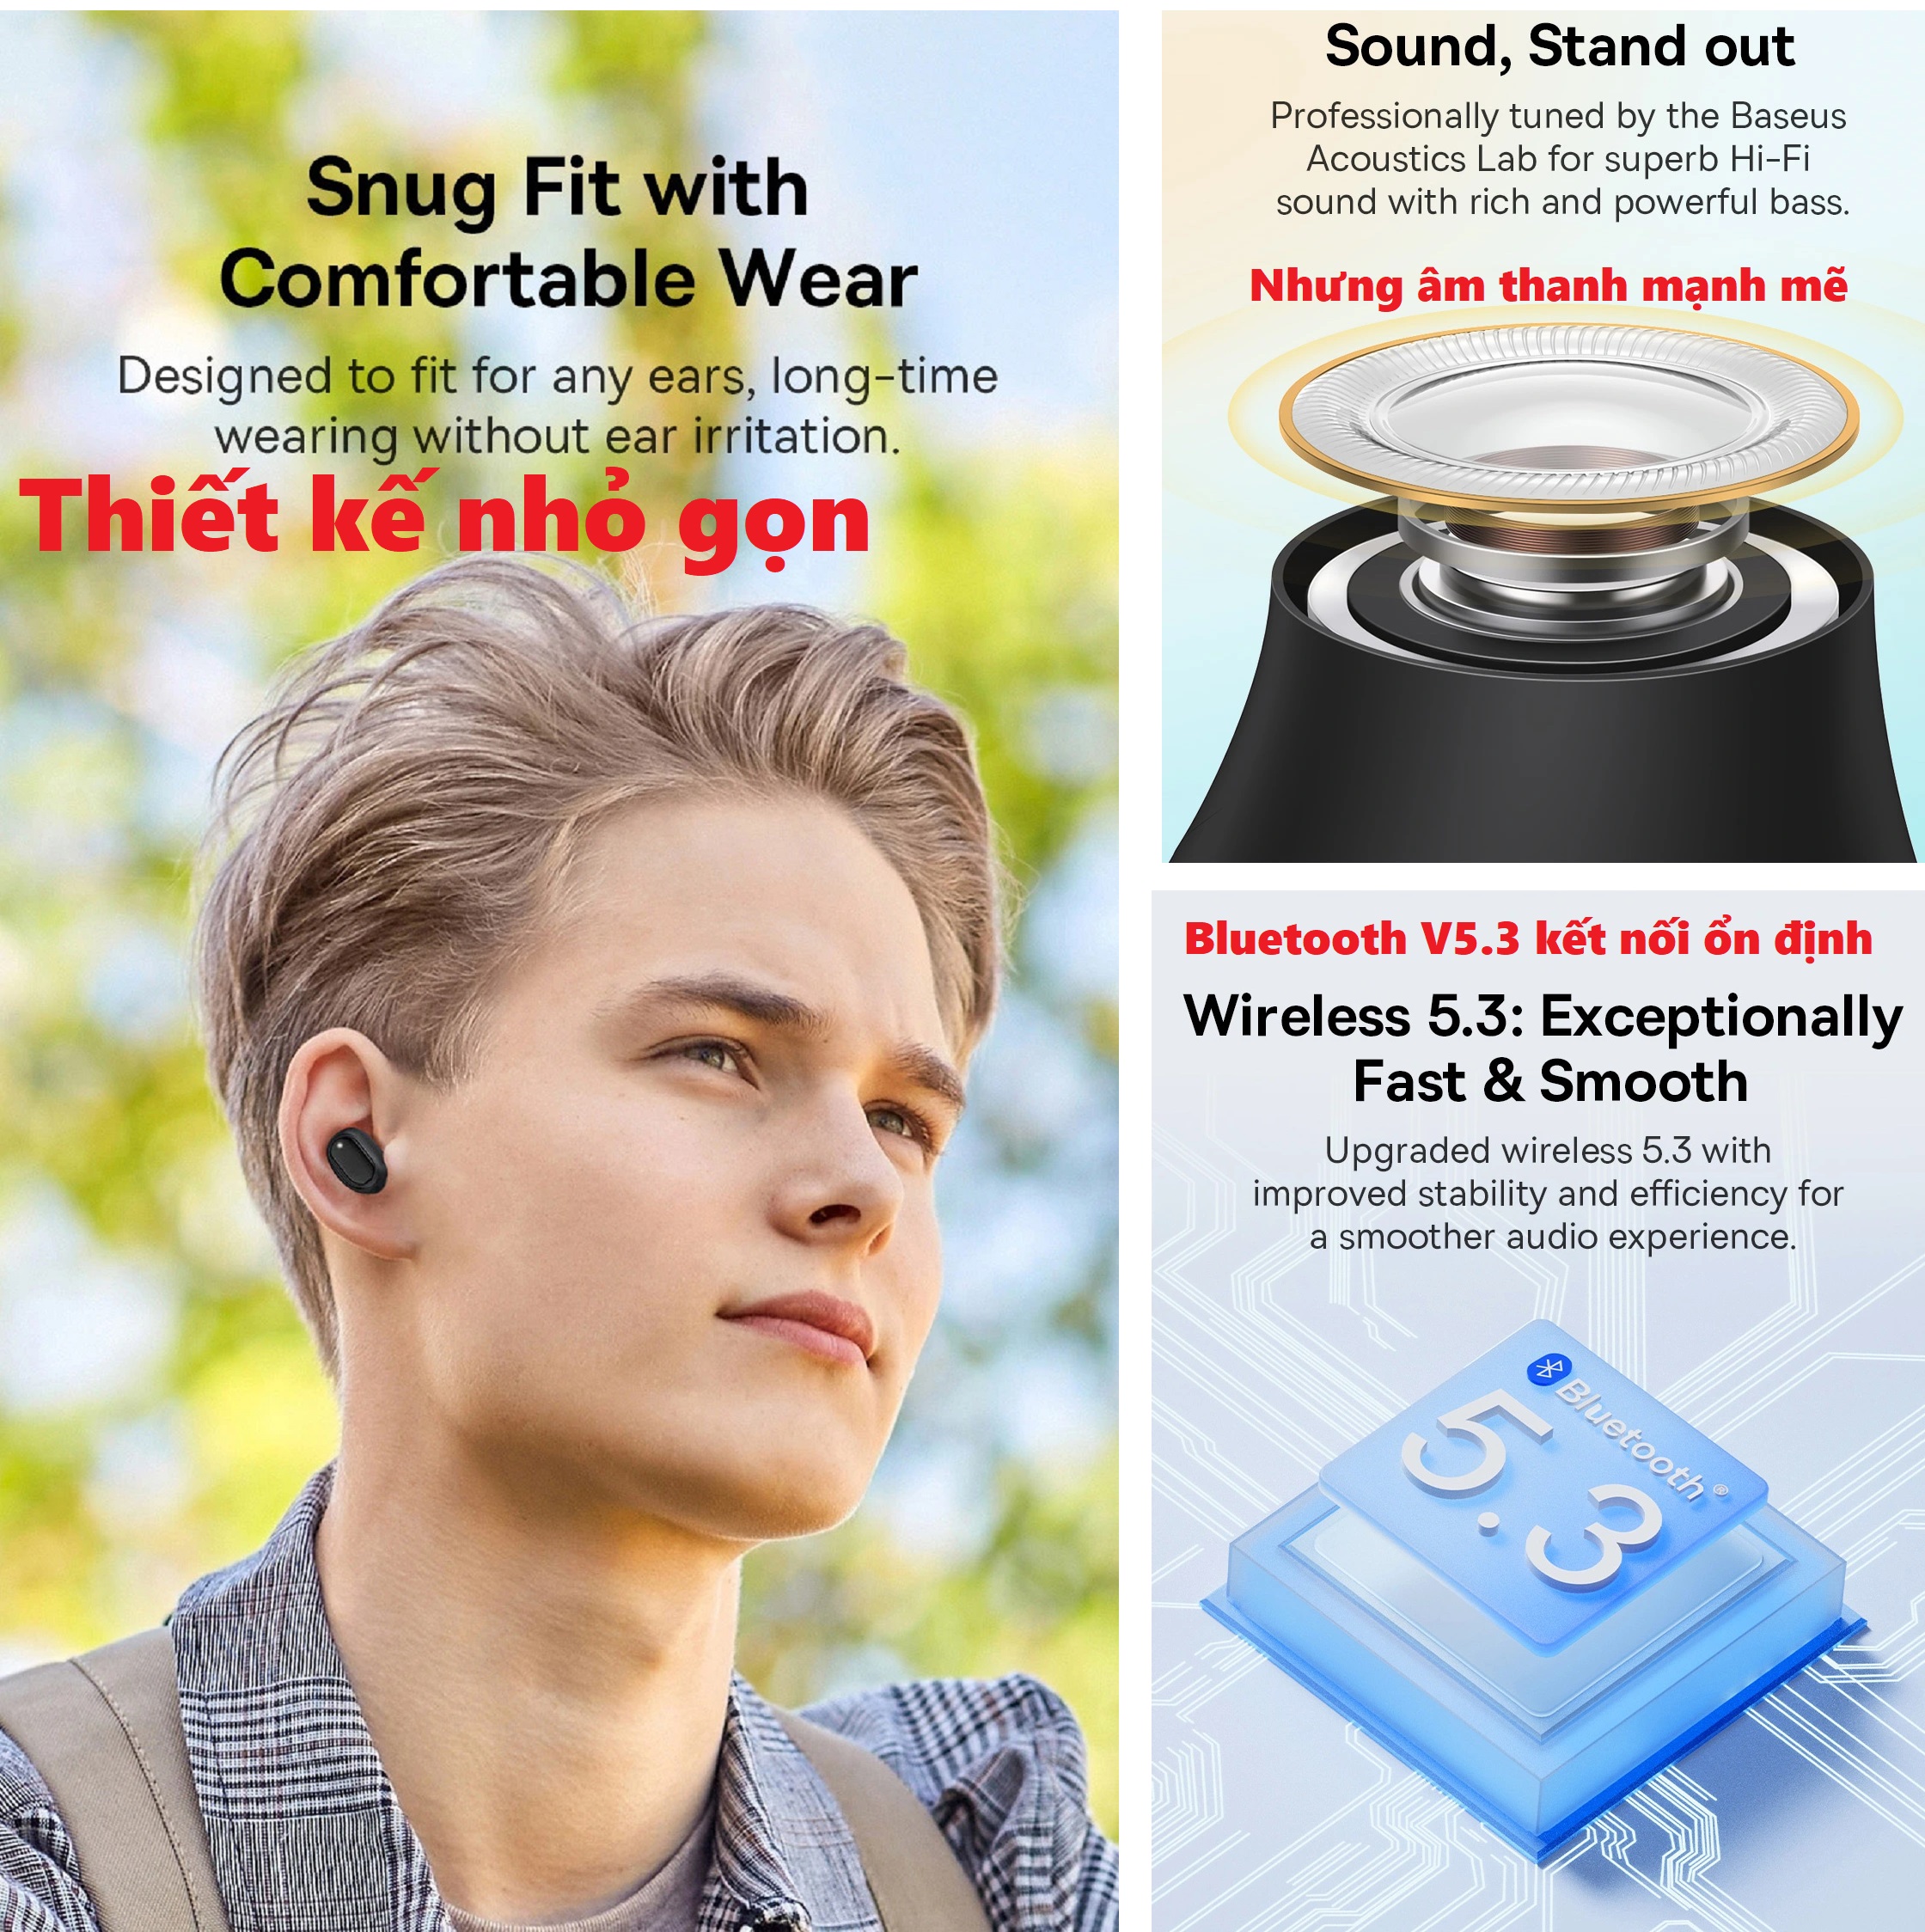 Tai nghe không dây mini Bluetooth V5.3 độ trễ thấp app tùy chỉnh Baseus Bowie EZ10 _ Hàng chính hãng